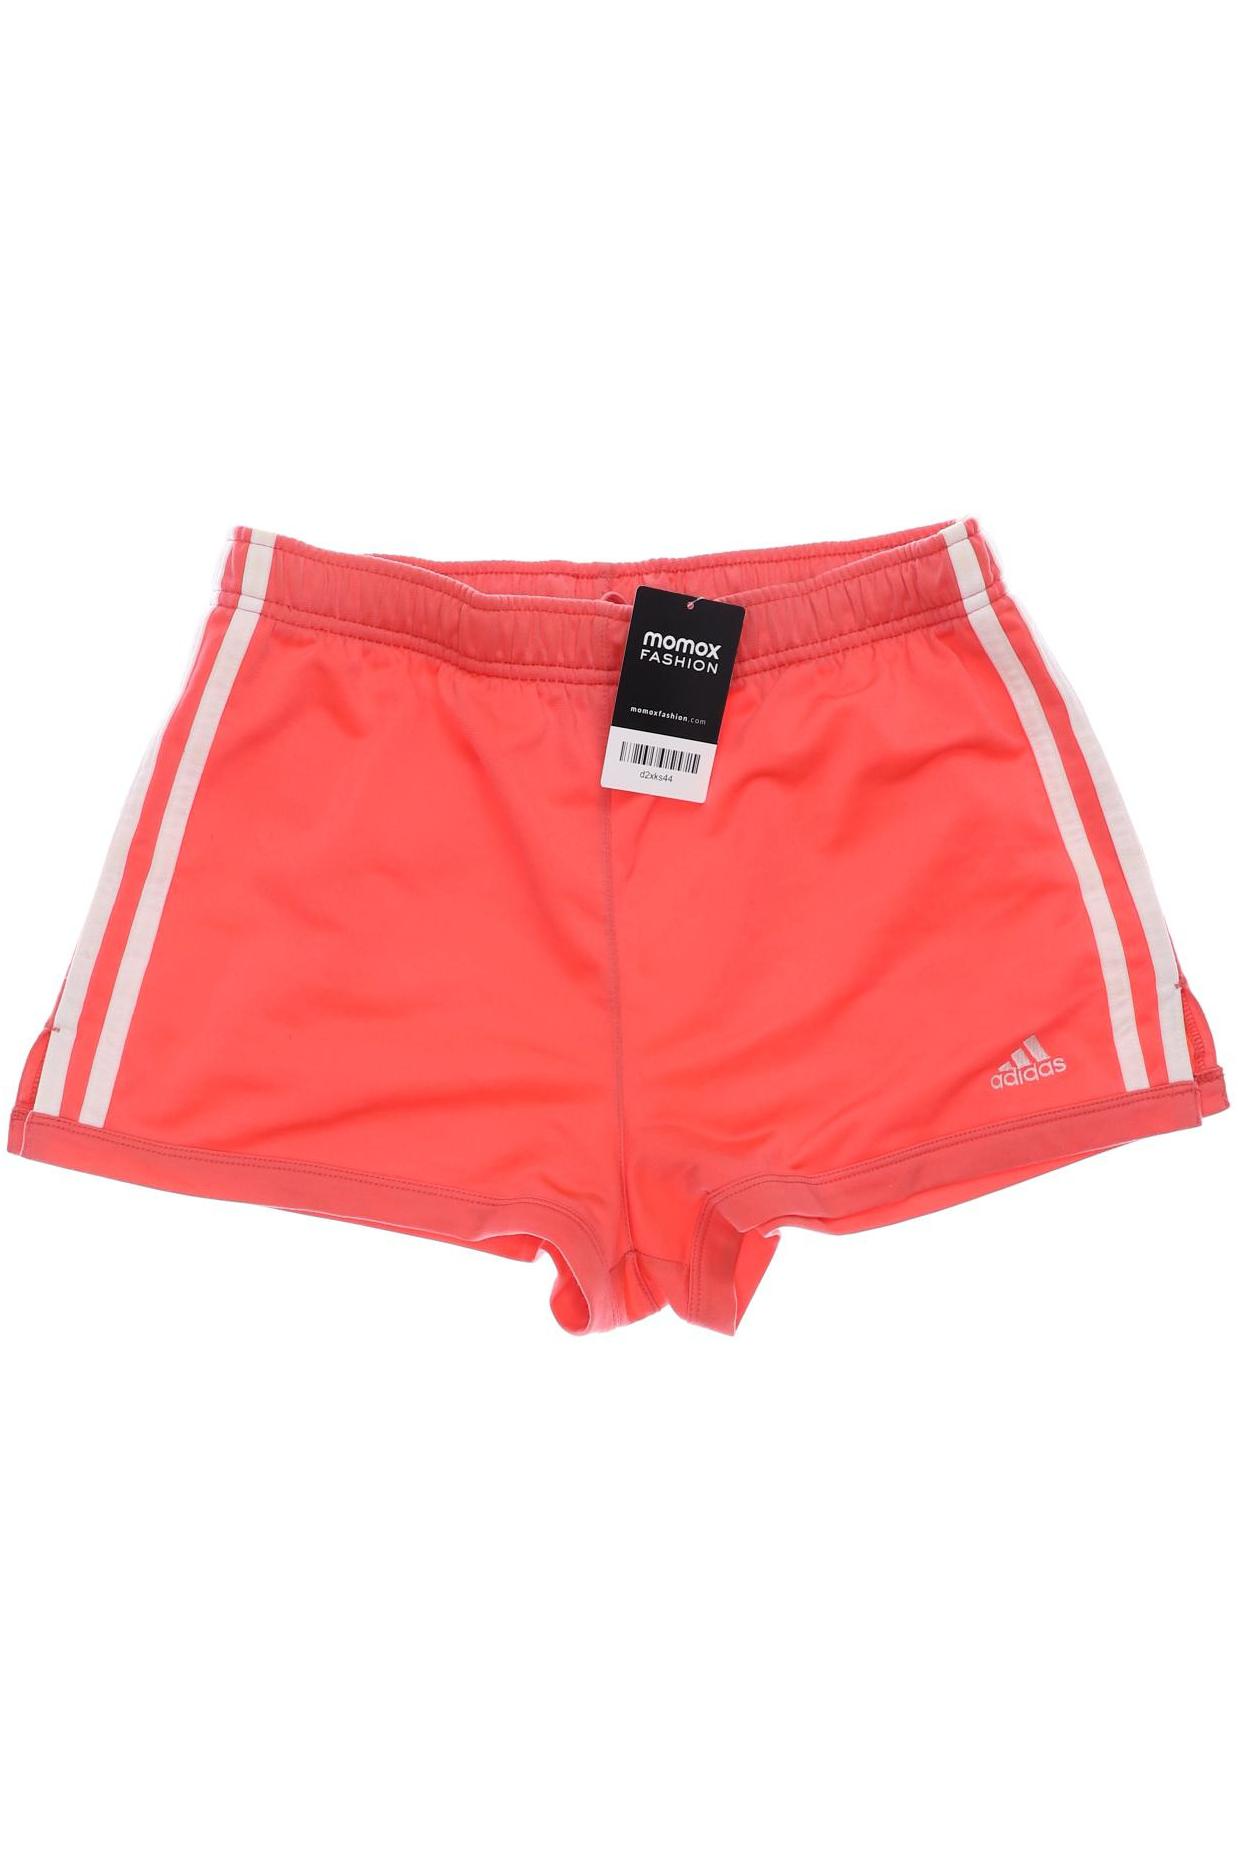 adidas Mädchen Shorts, pink von Adidas